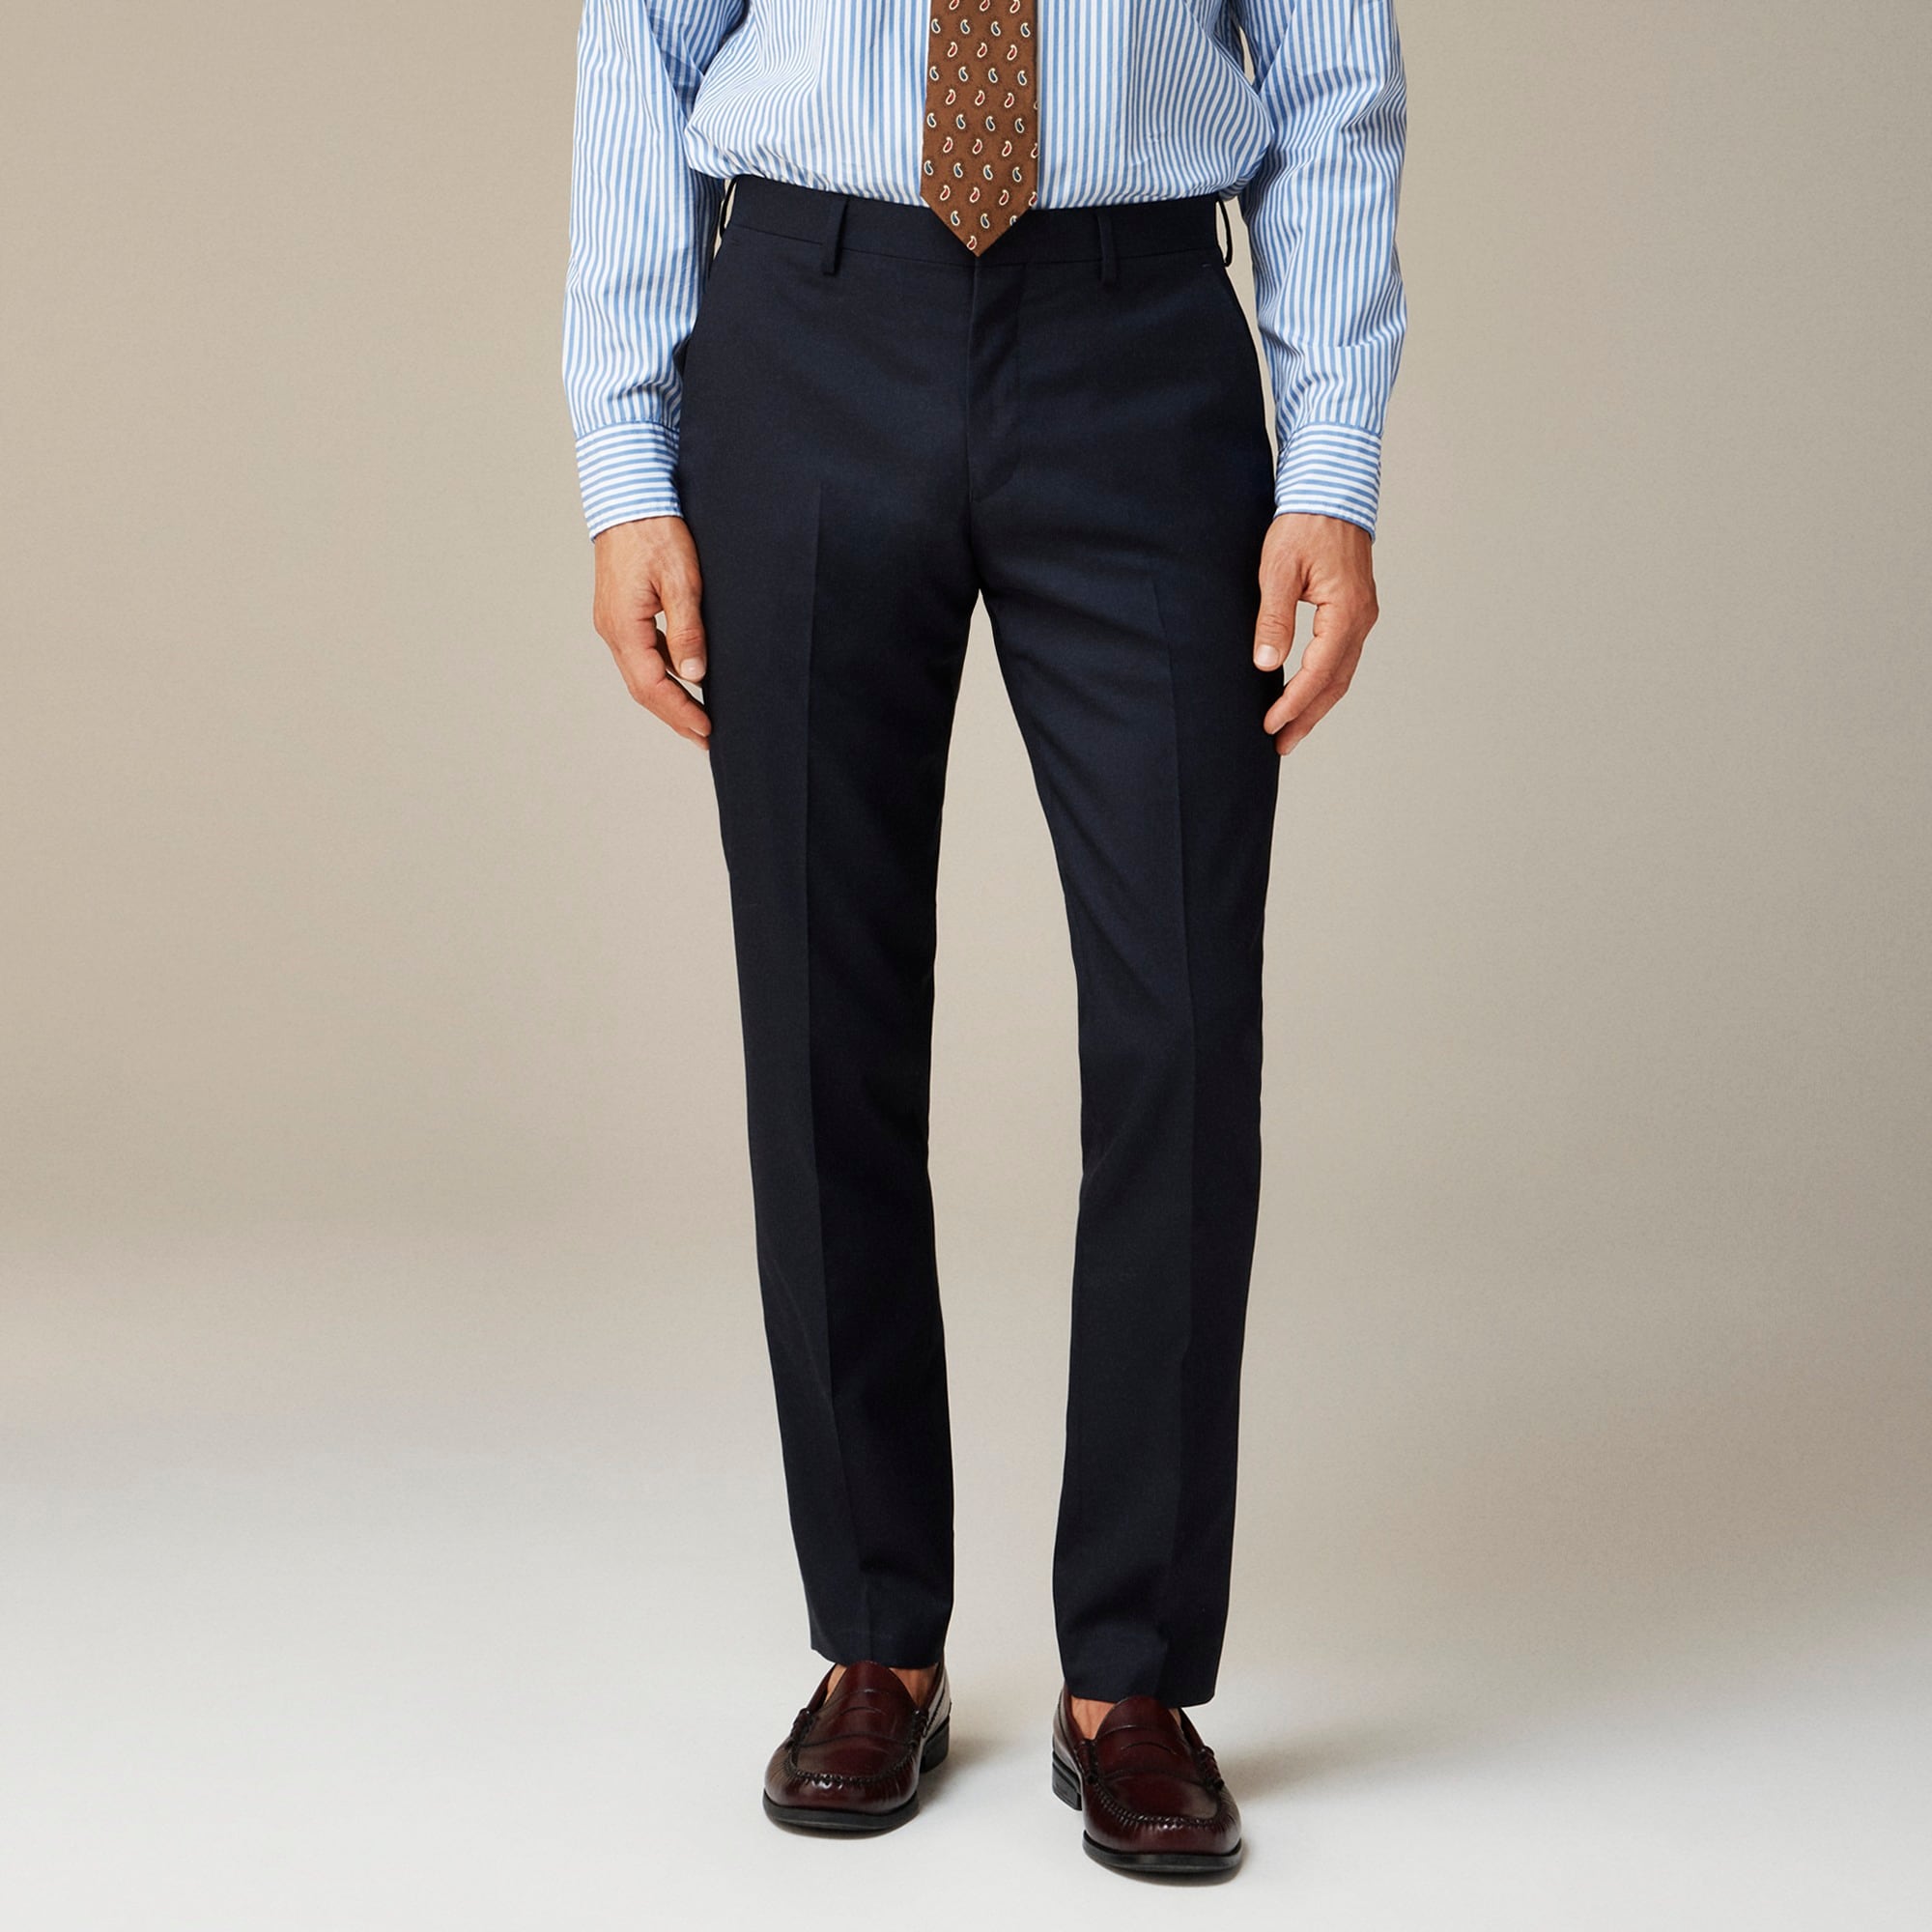  Ludlow Slim-fit suit pant in Italian wool